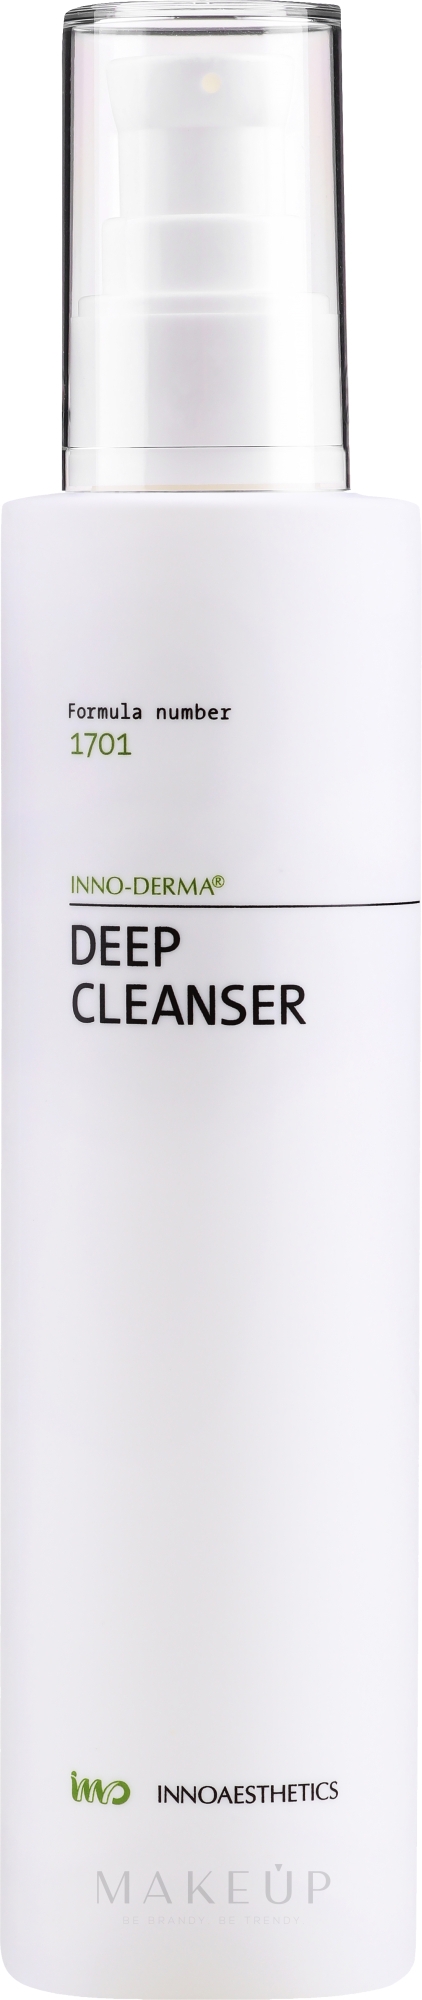 Tief reinigender und ausgleichender Gesichtswaschschaum für fettige Haut mit Glykolsäure - Innoaesthetics Inno-Derma Deep Cleanser — Bild 200 ml